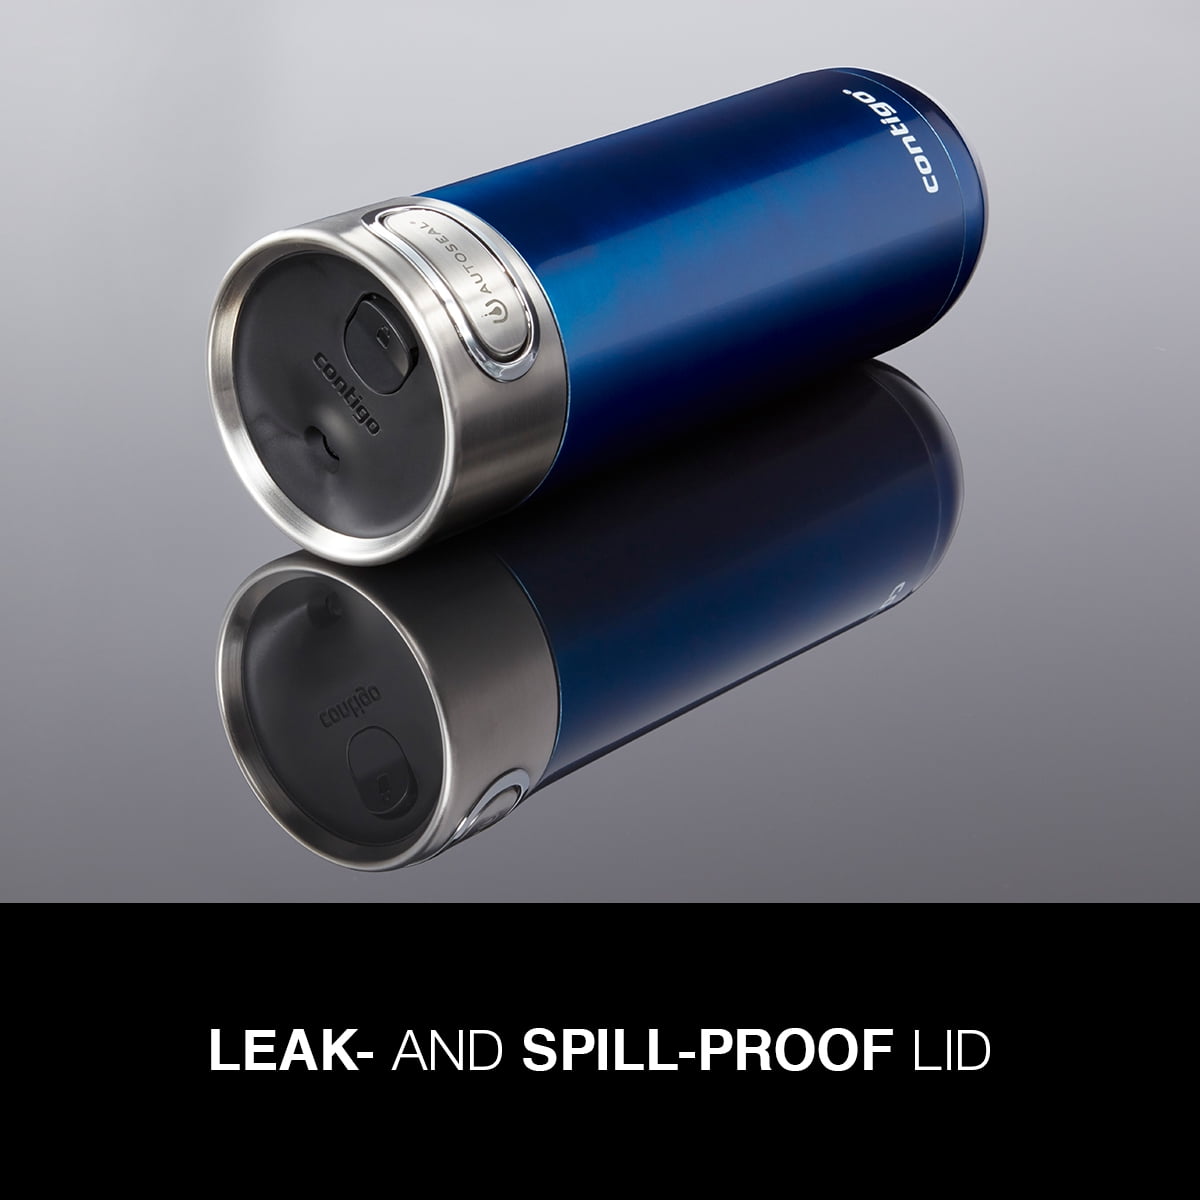 Contigo Autoseal Travel Mug Review-Spill Proof And Leak Proof 